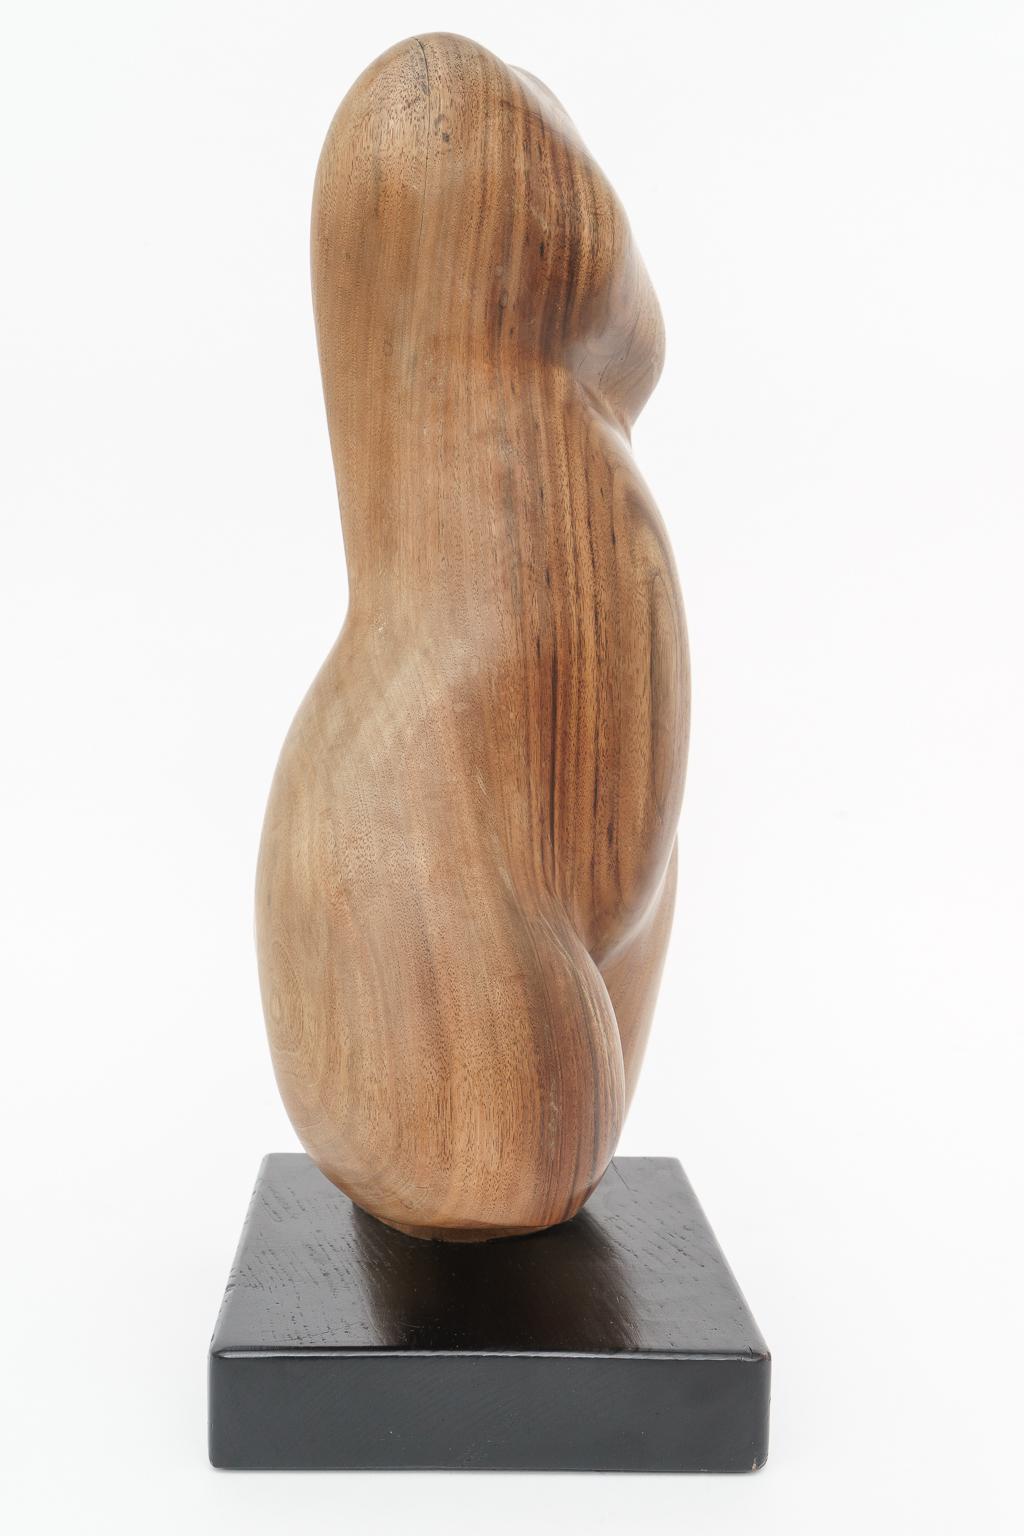 wooden torso sculpture